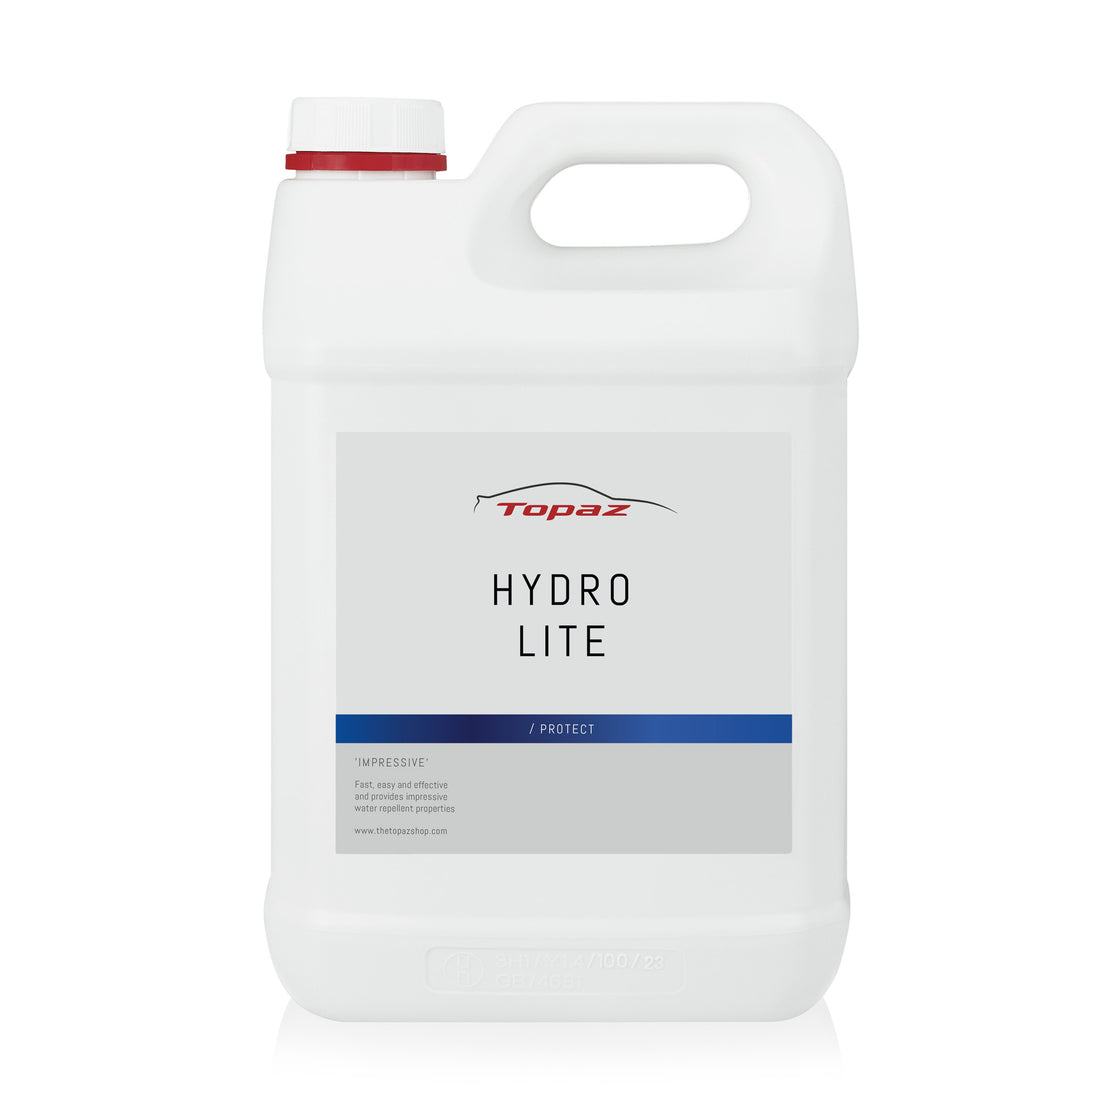 Hydro Lite